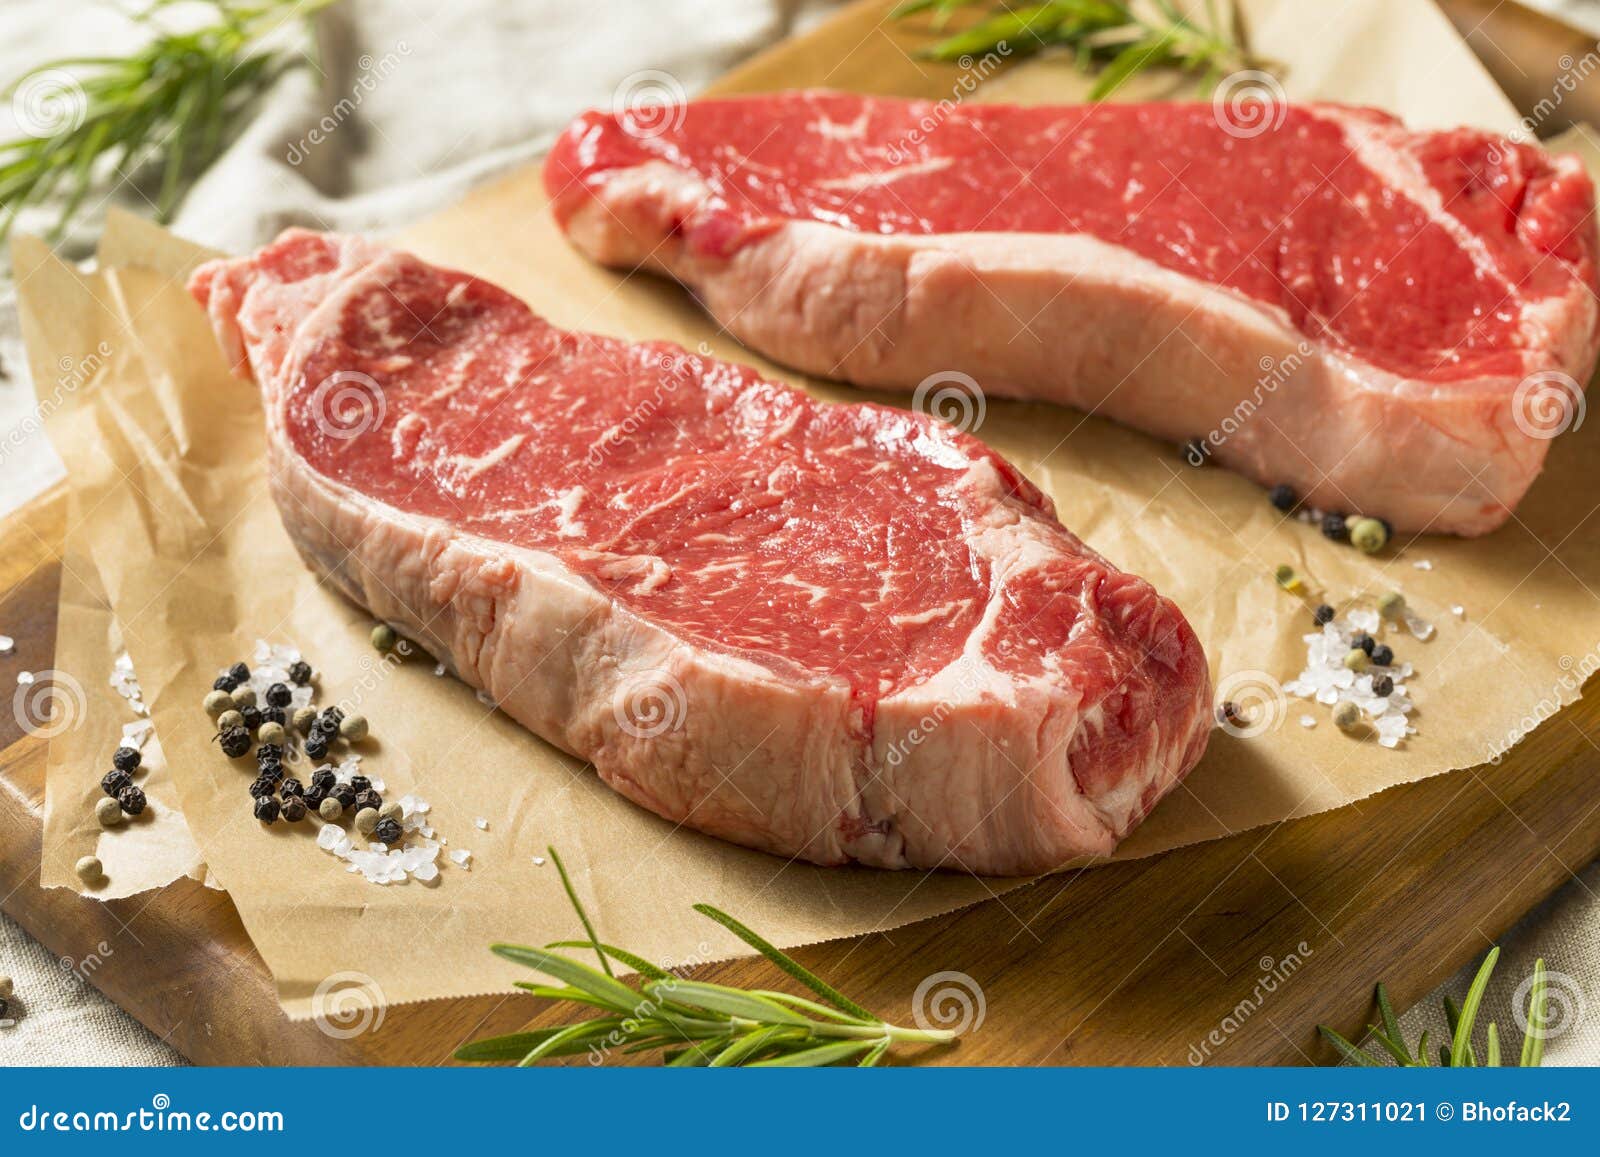 raw grass fed ny strip steaks